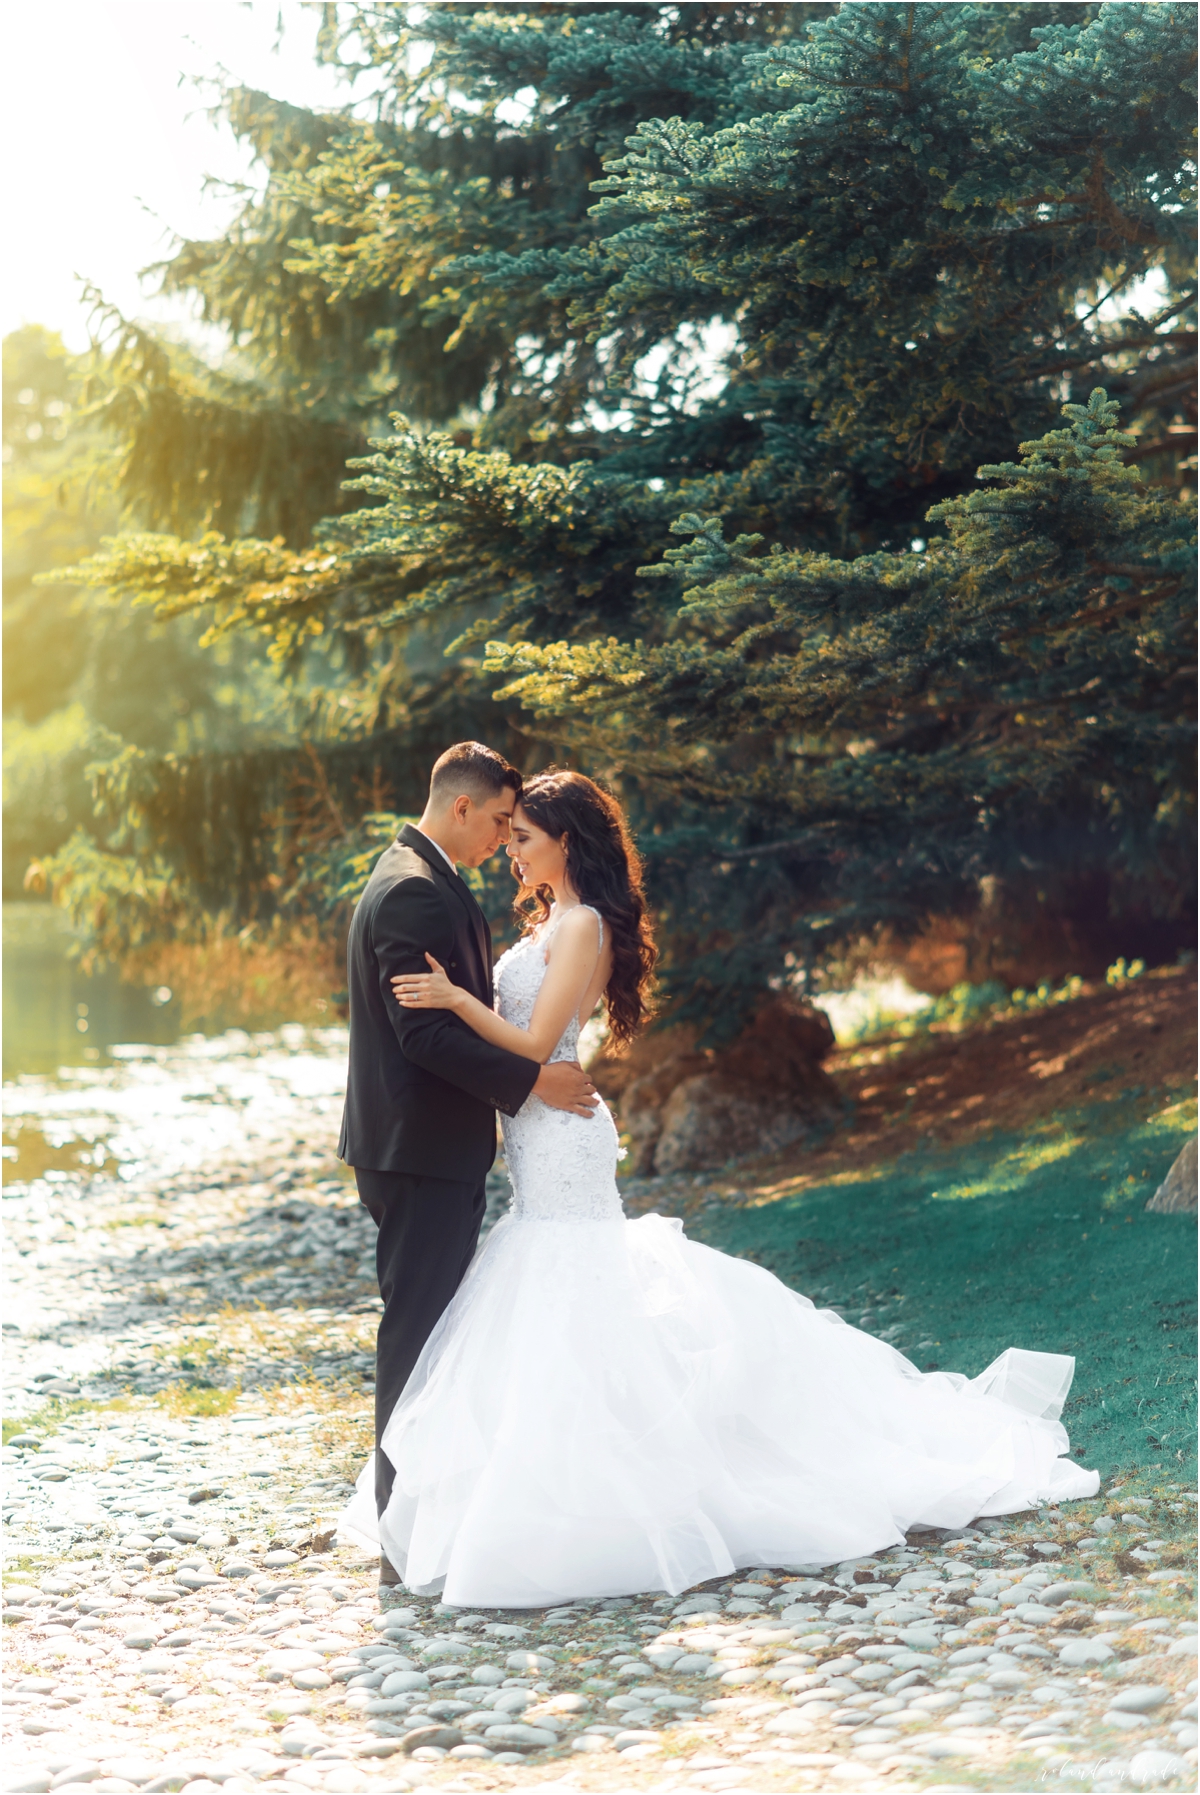 Mayra + Julian Chicago Botanic Garden Bridal Photography Chicago Wedding Photography Photographer14.jpg